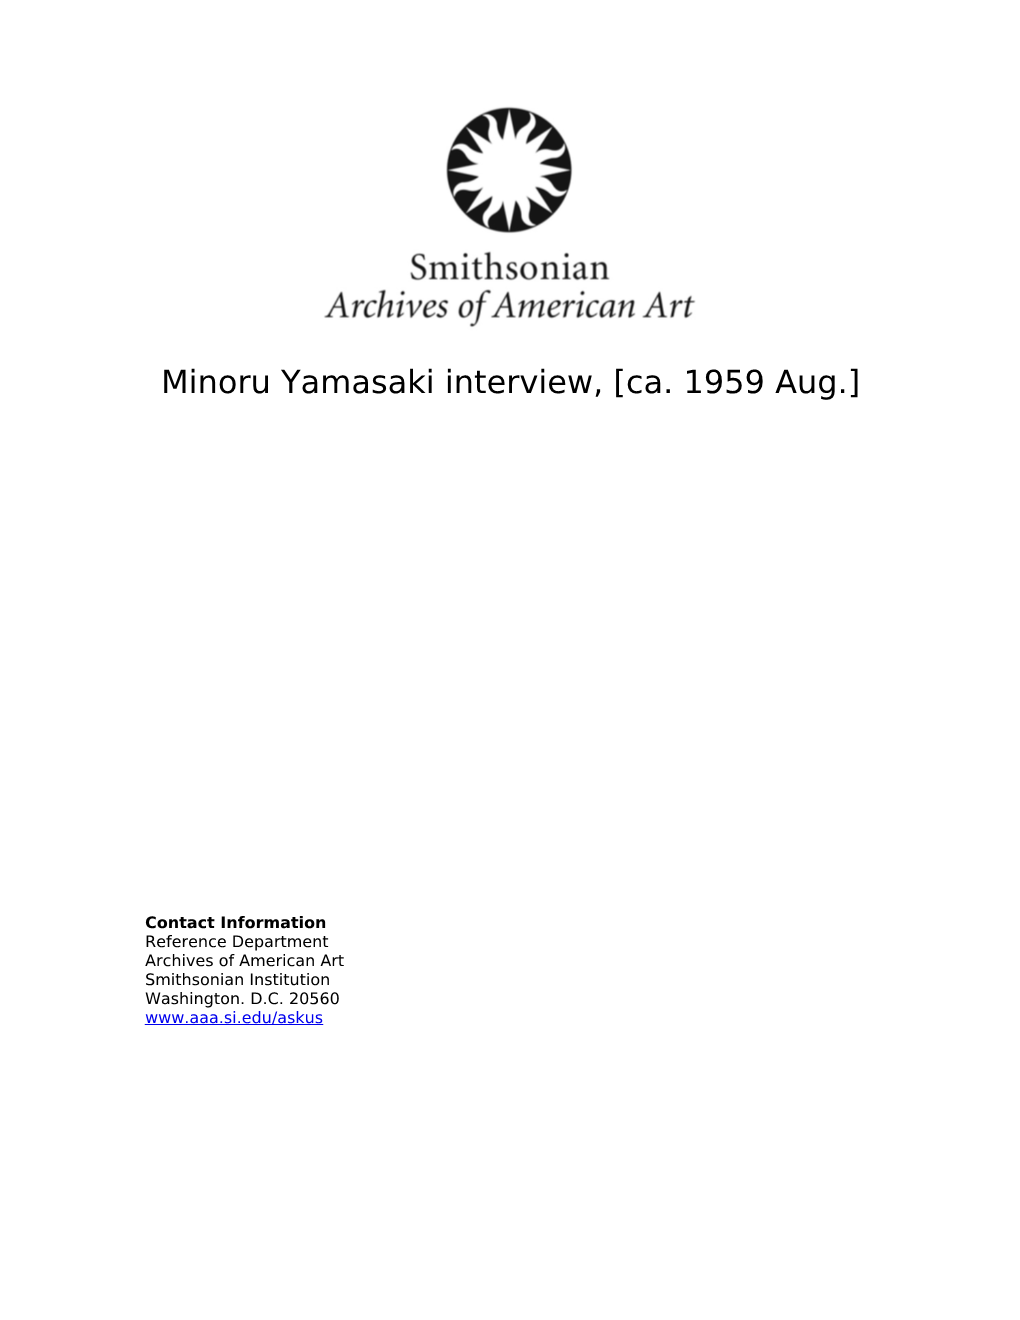 Minoru Yamasaki Interview, [Ca